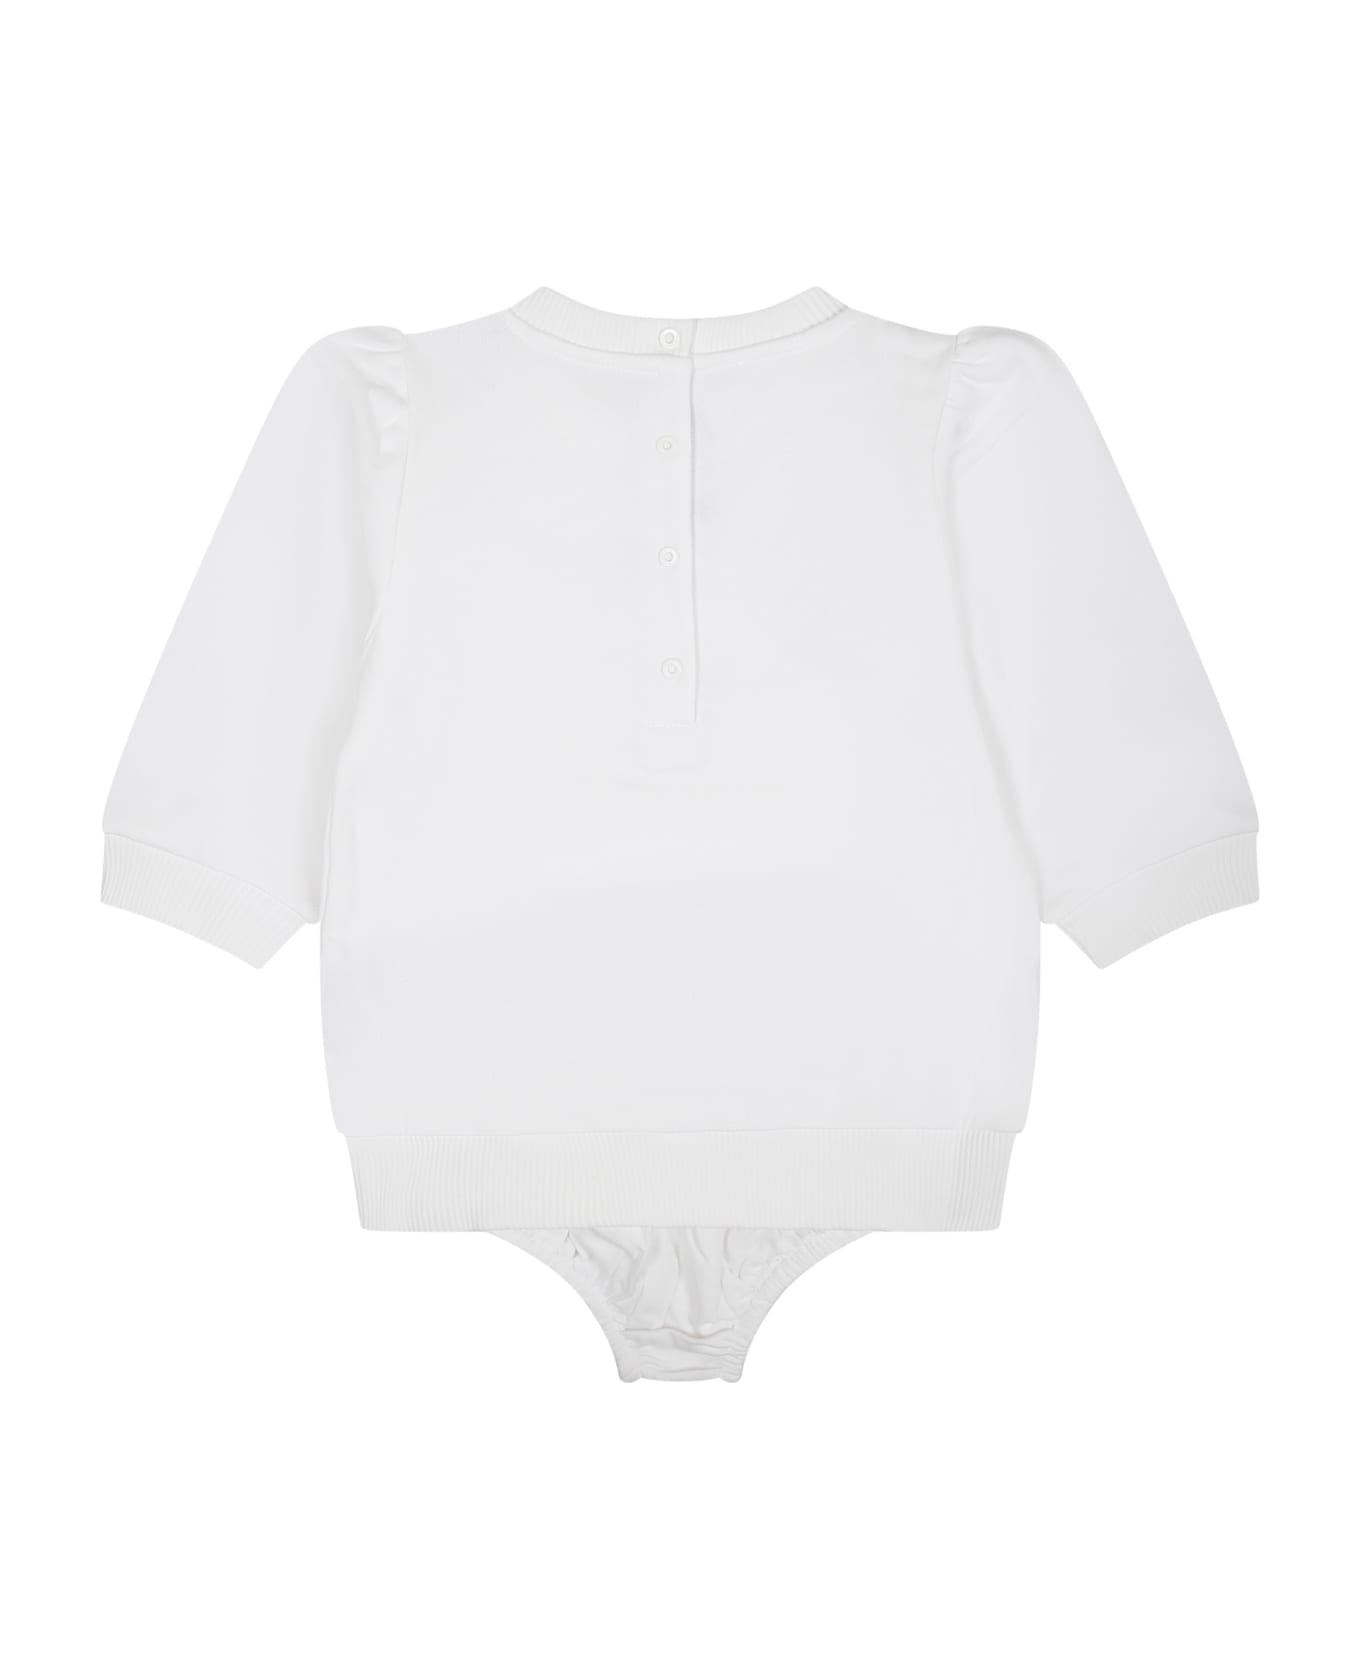 Balmain White Dress For Baby Girl With Logo - White ウェア